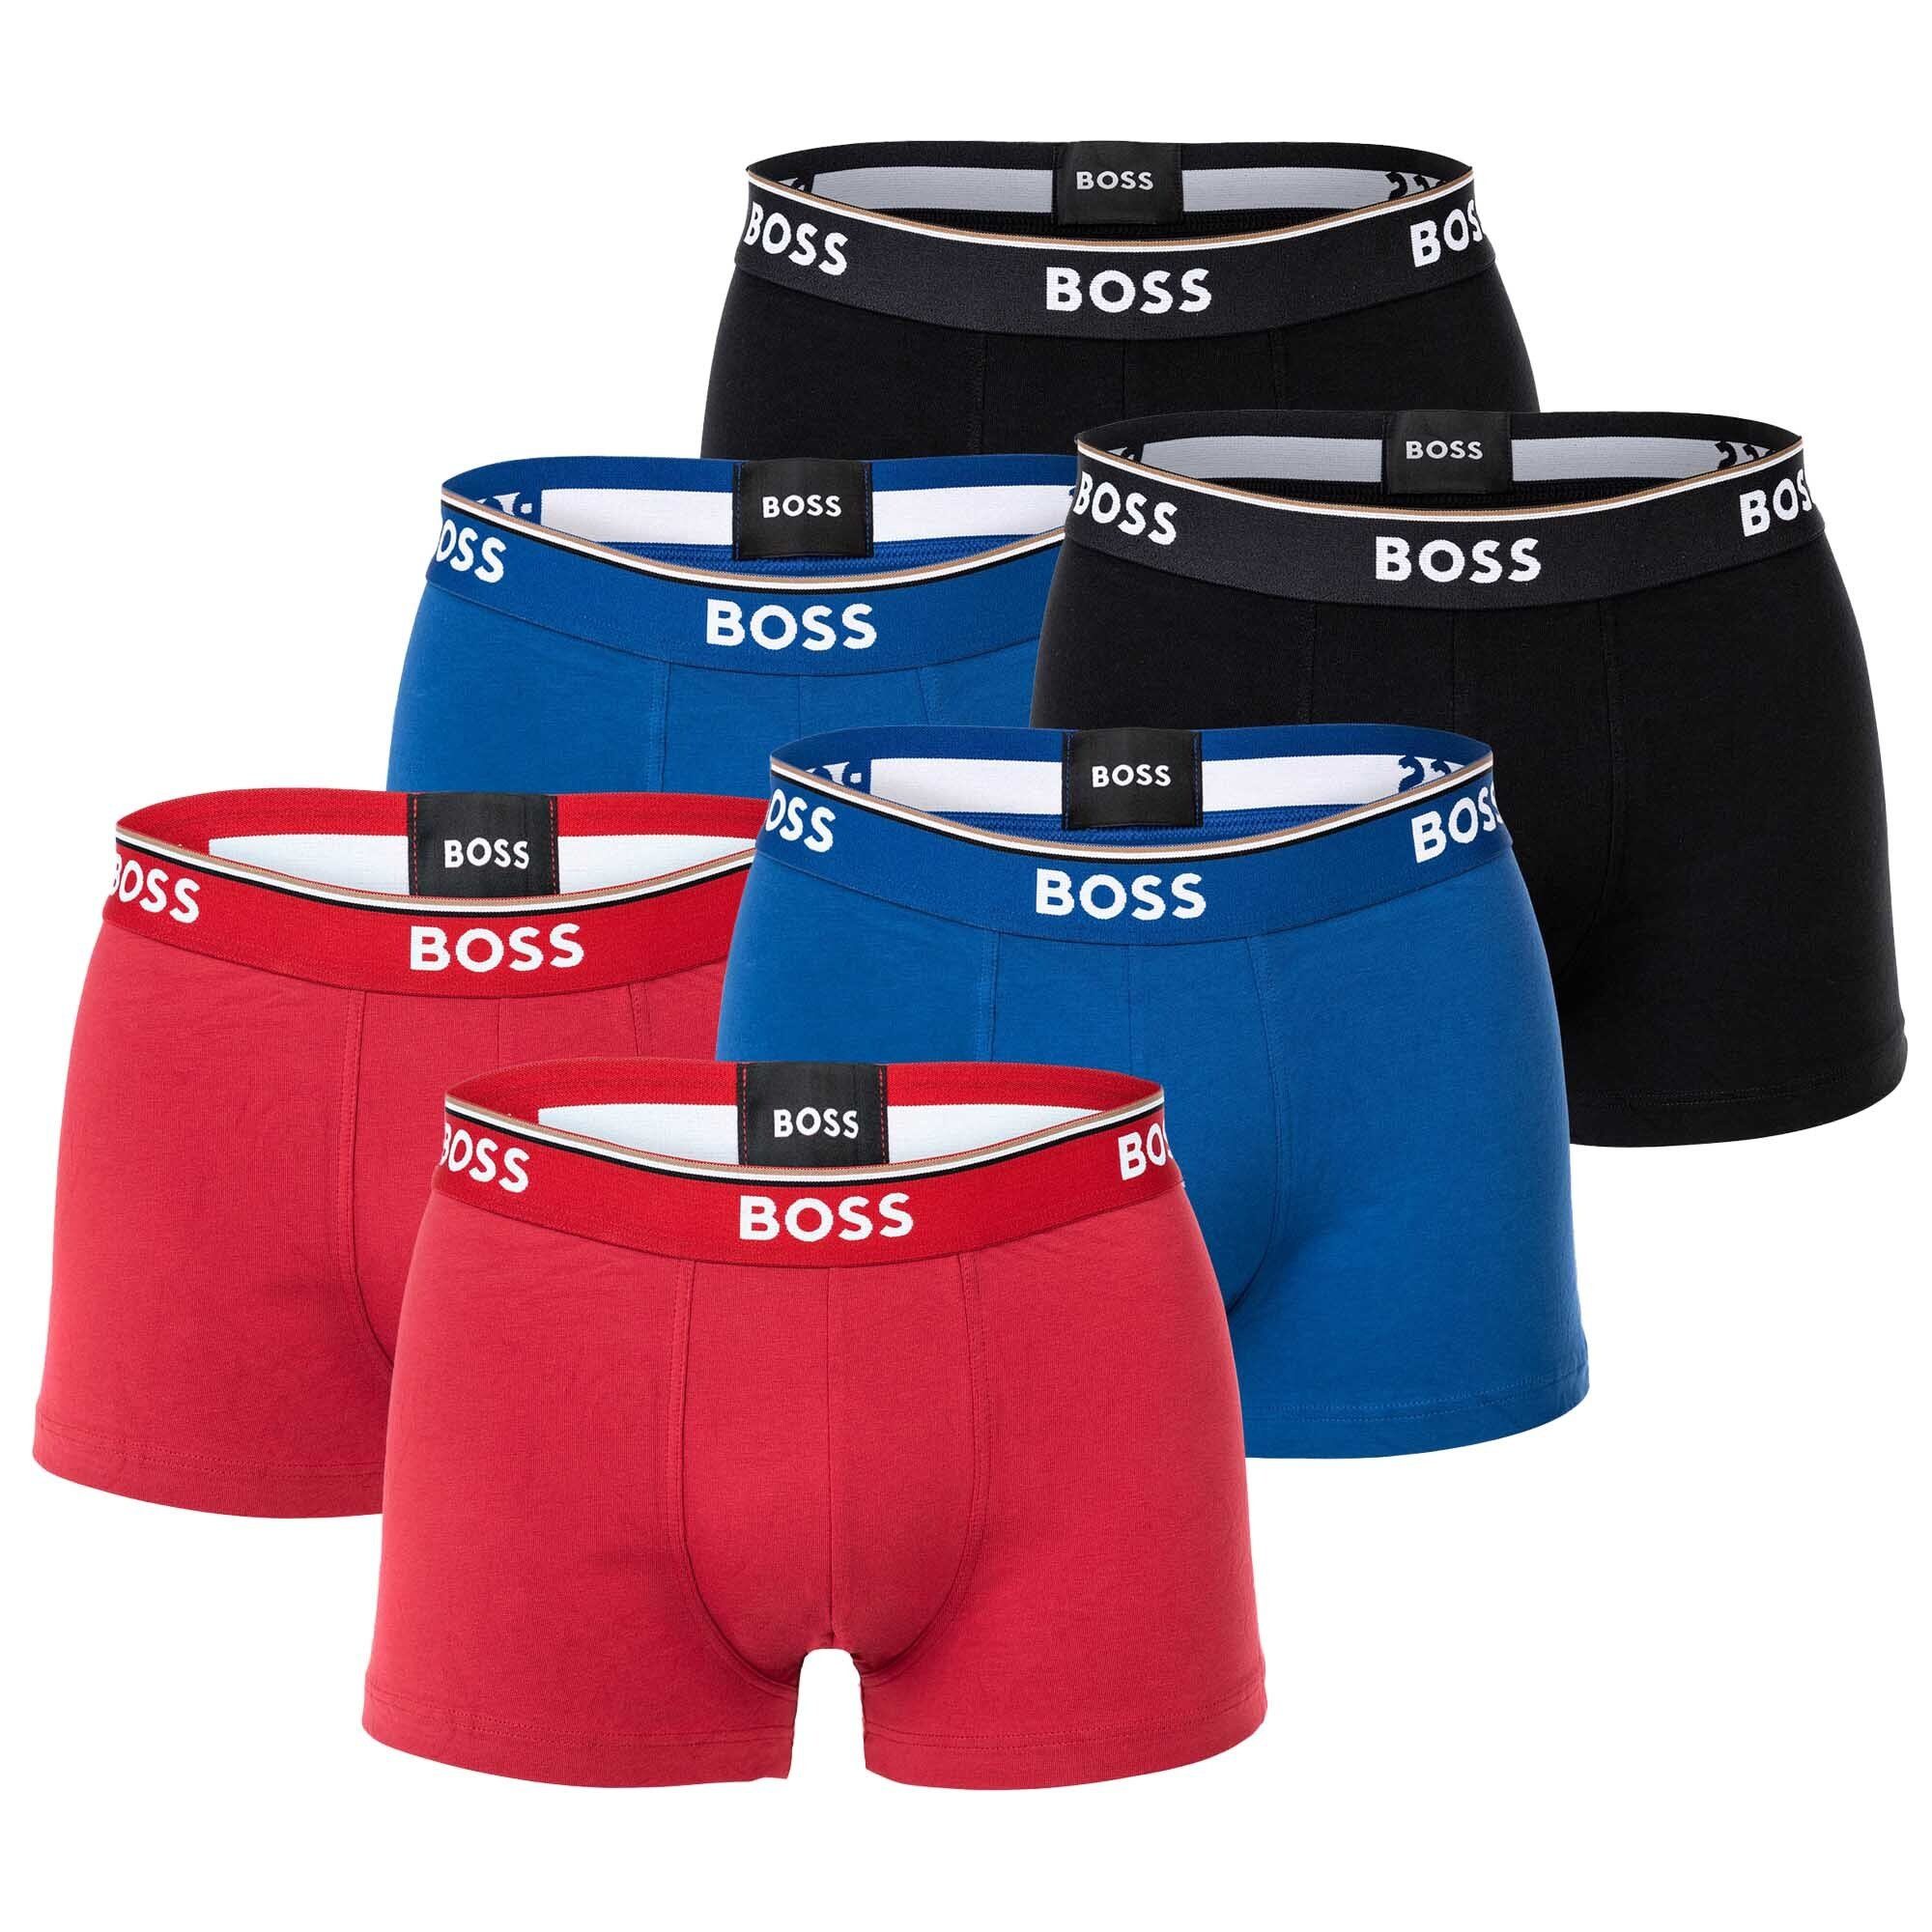 BOSS Boxer Herren Trunks, 6er Pack - 6P Power, Boxershorts